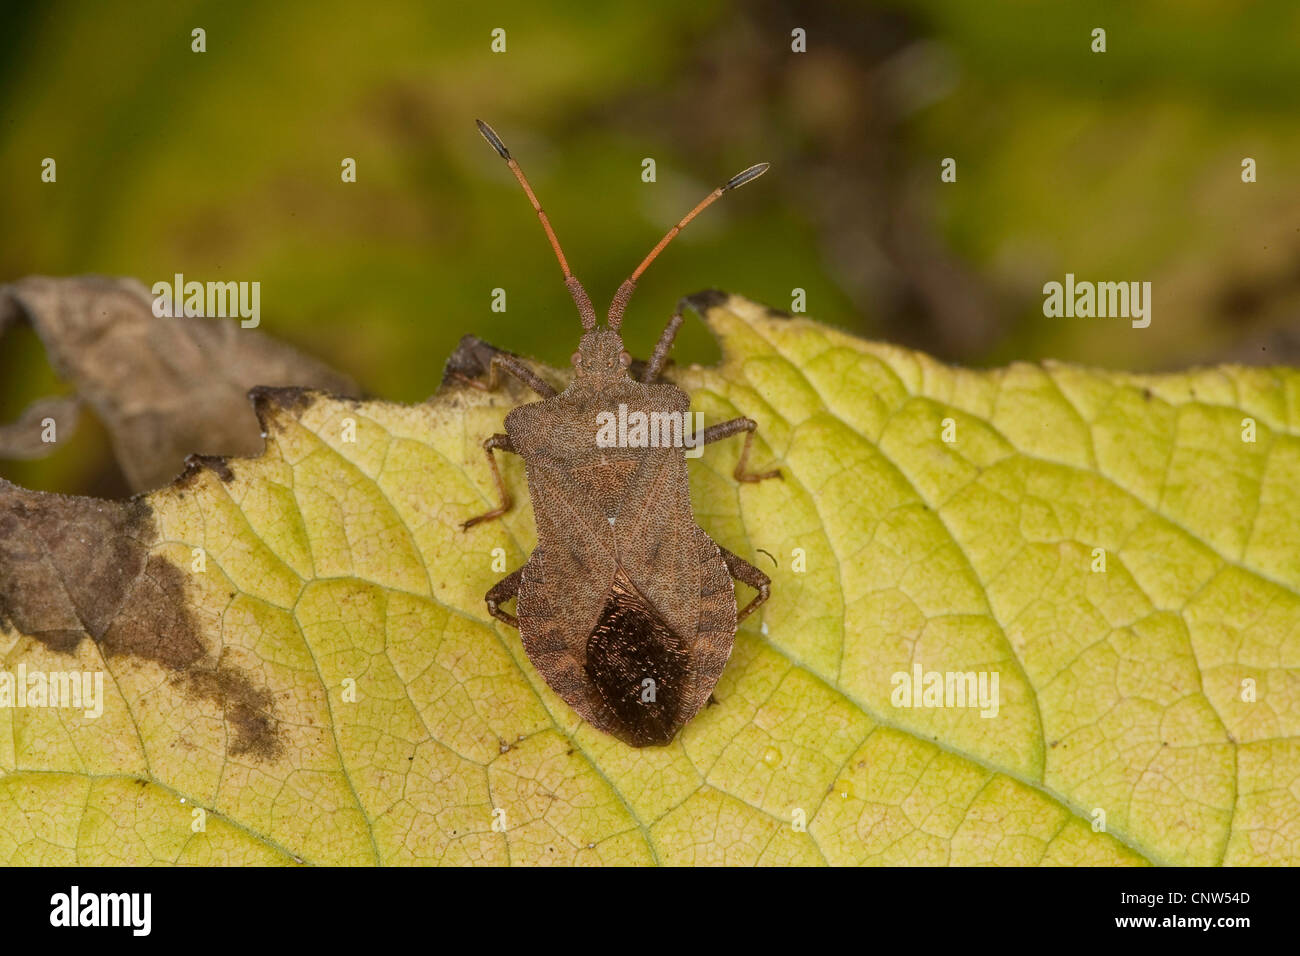 squash bug (Coreus marginatus, Mesocerus marginatus), on leaf, Germany Stock Photo